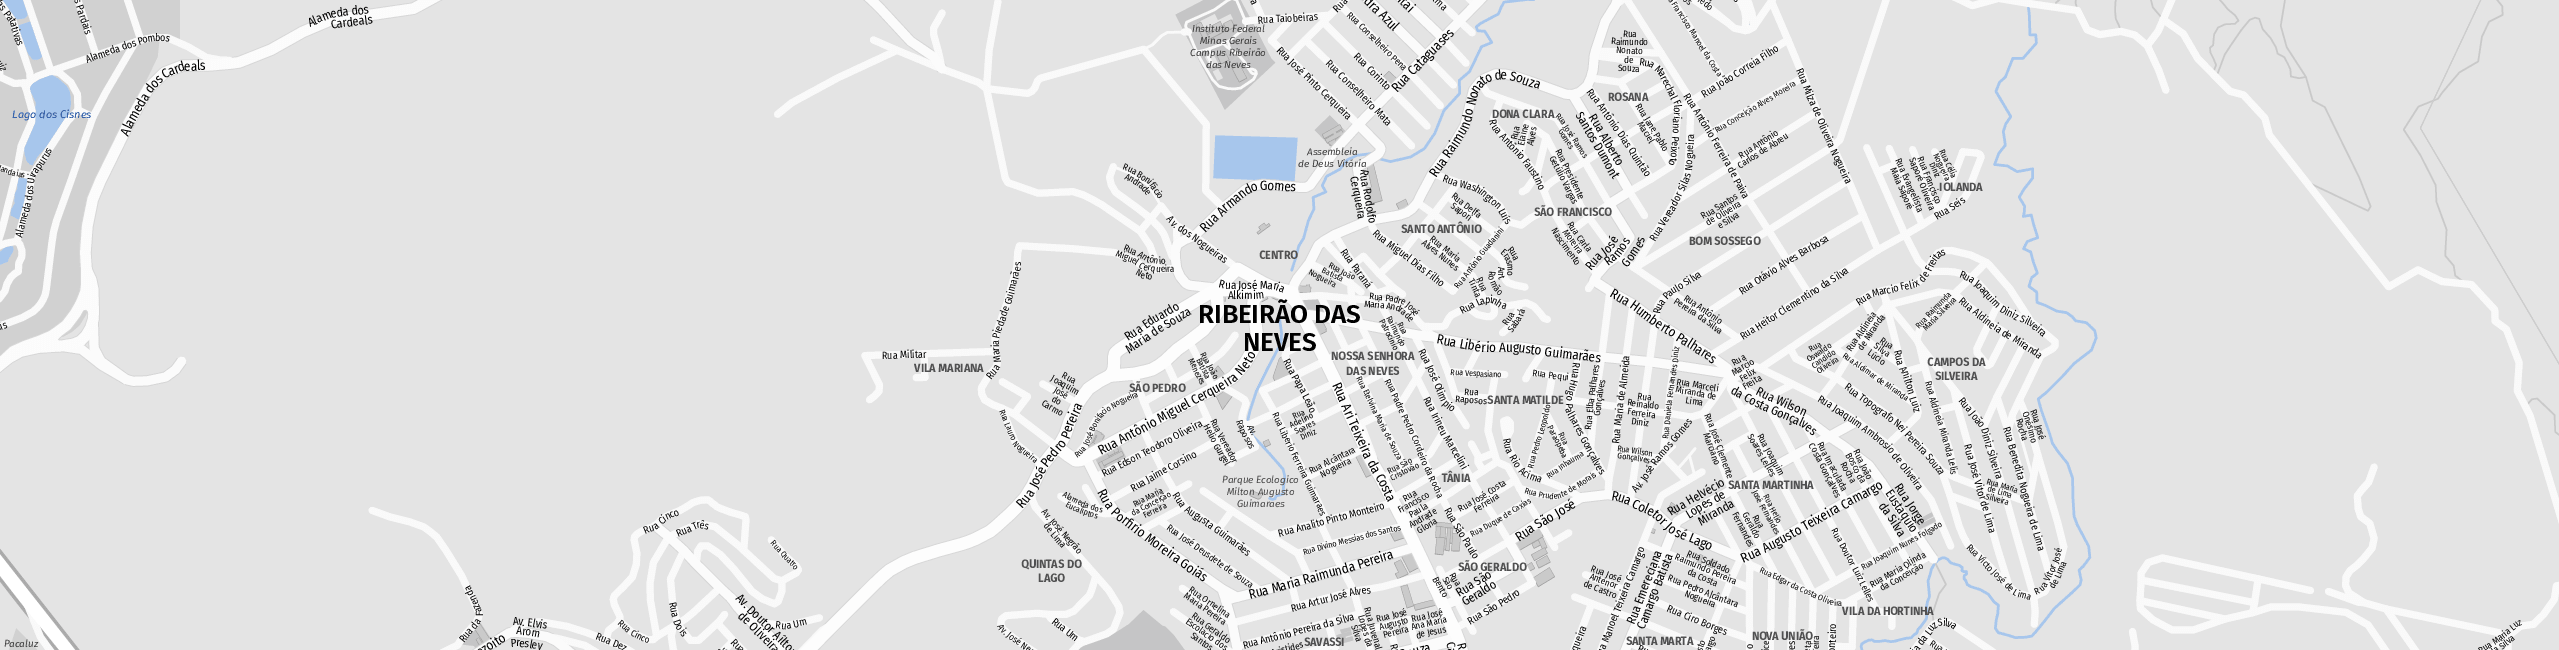 Stadtplan Ribeirão das Neves zum Downloaden.